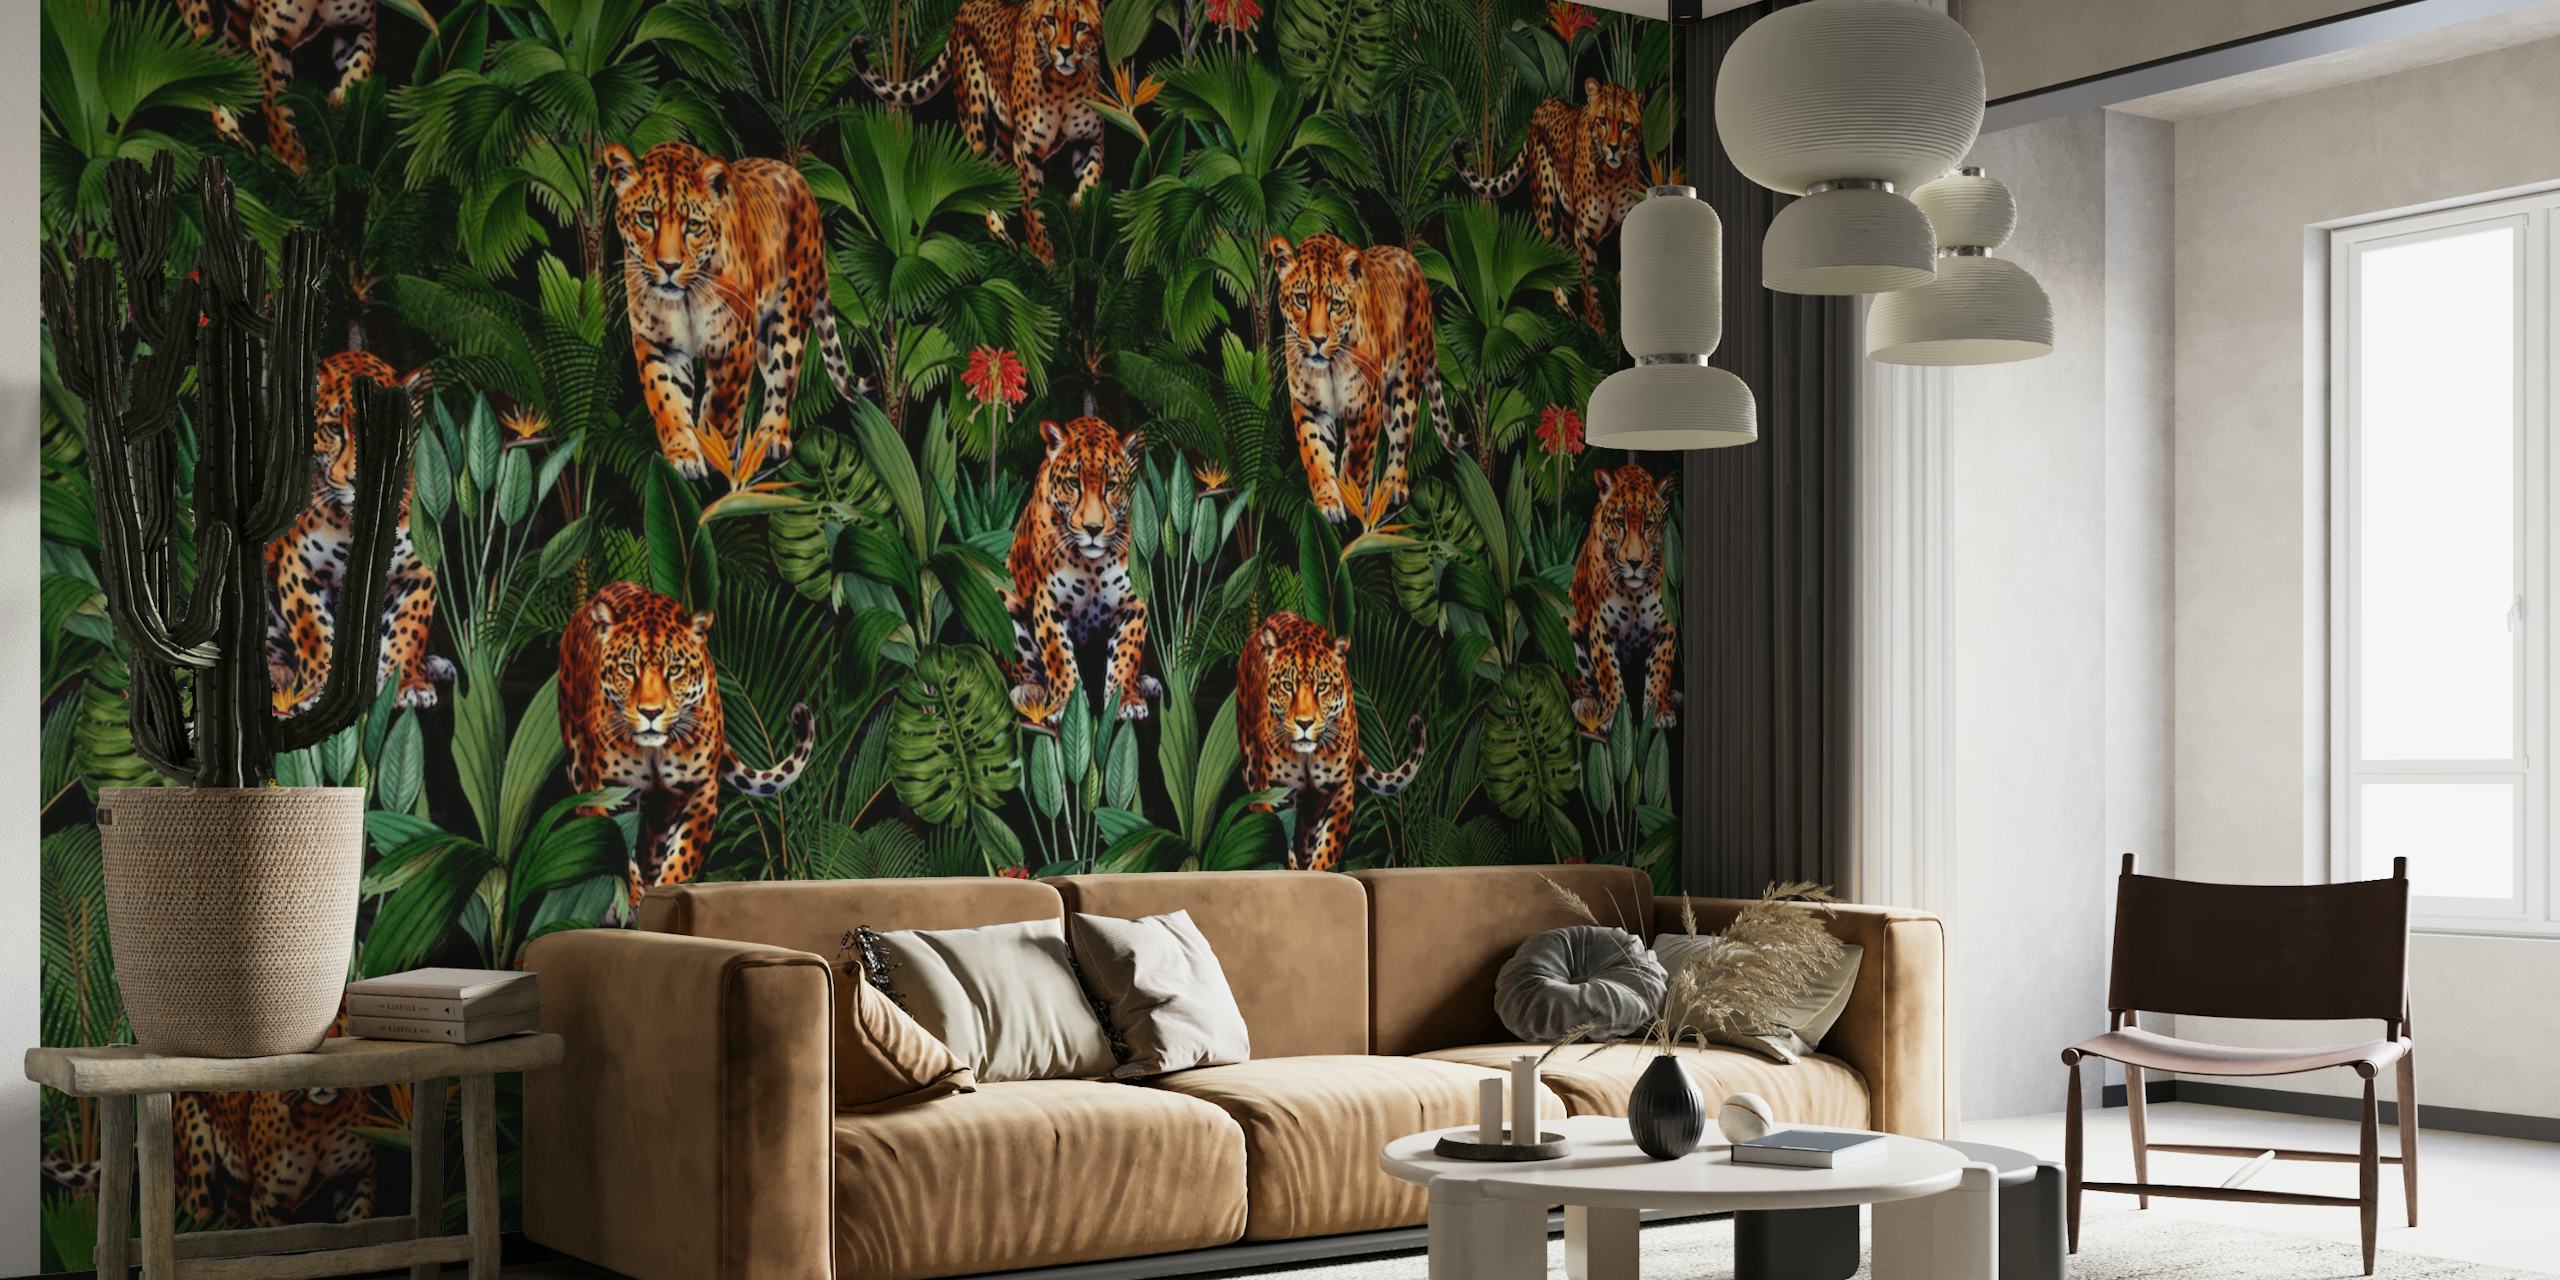 Rehevä viidakkoseinämaalaus, jossa tiikereitä on piilotettu vihreiden lehtien sekaan yöaikaan.